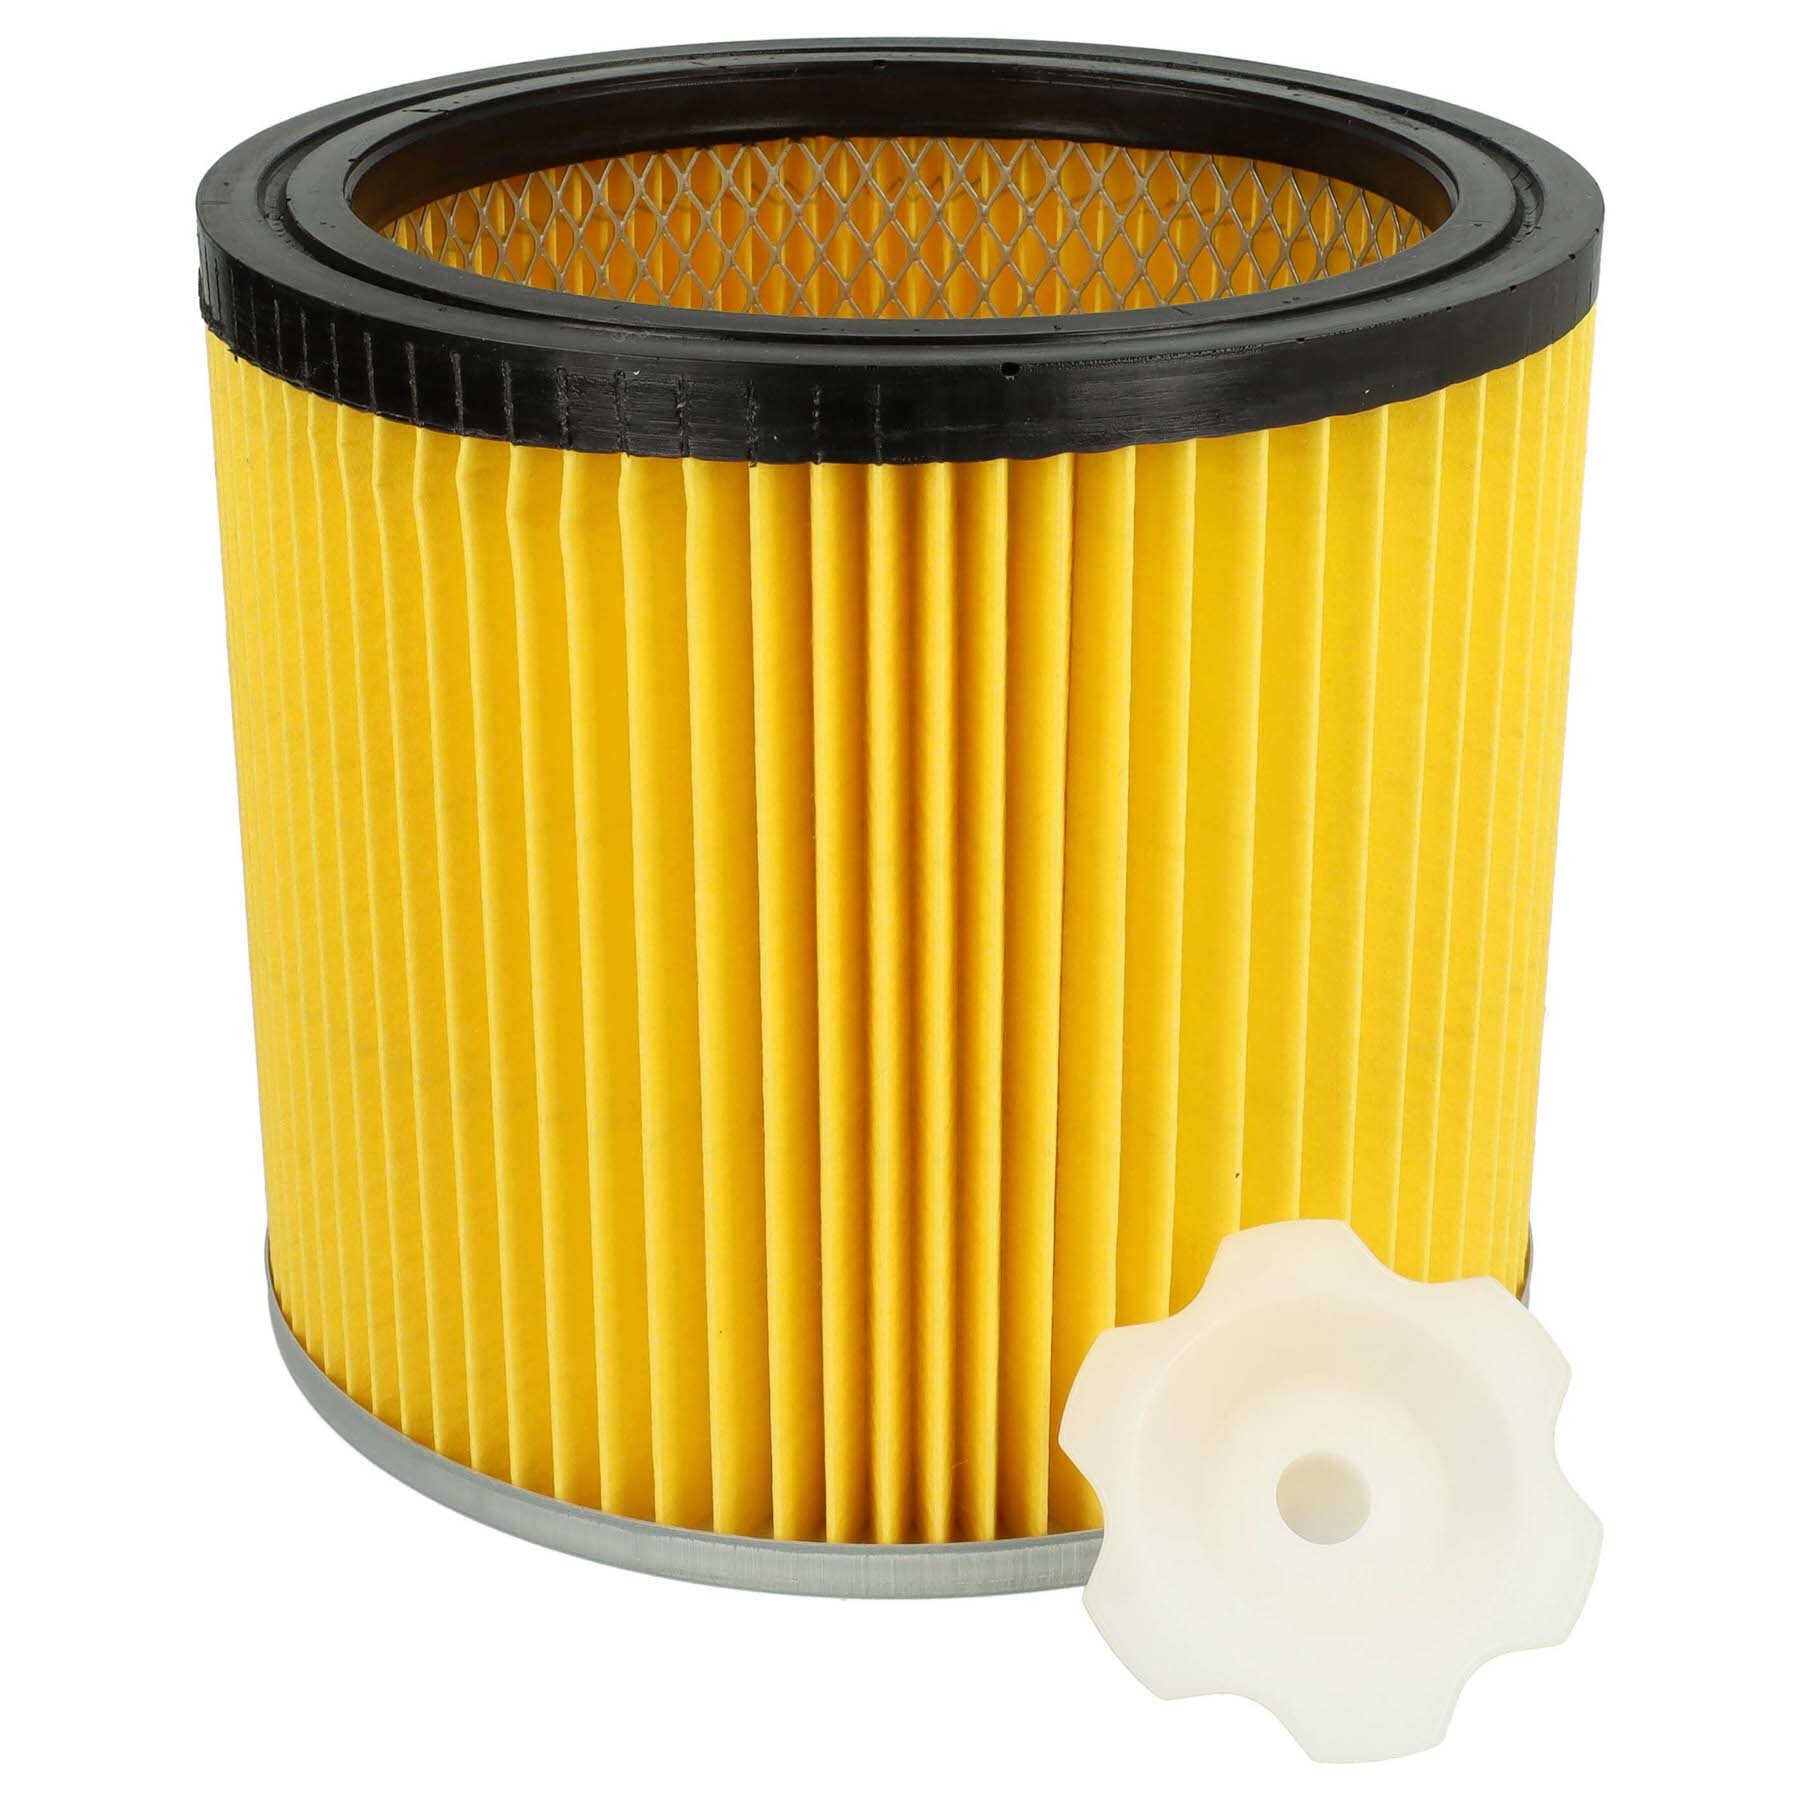 Vhbw filtro compatibile con Bosch GAS 12-30 F Professional, PAS 1000, PAS  11-25, PAS 11-25 F, PAS 12-50 F aspirapolvere; filtro a pieghe